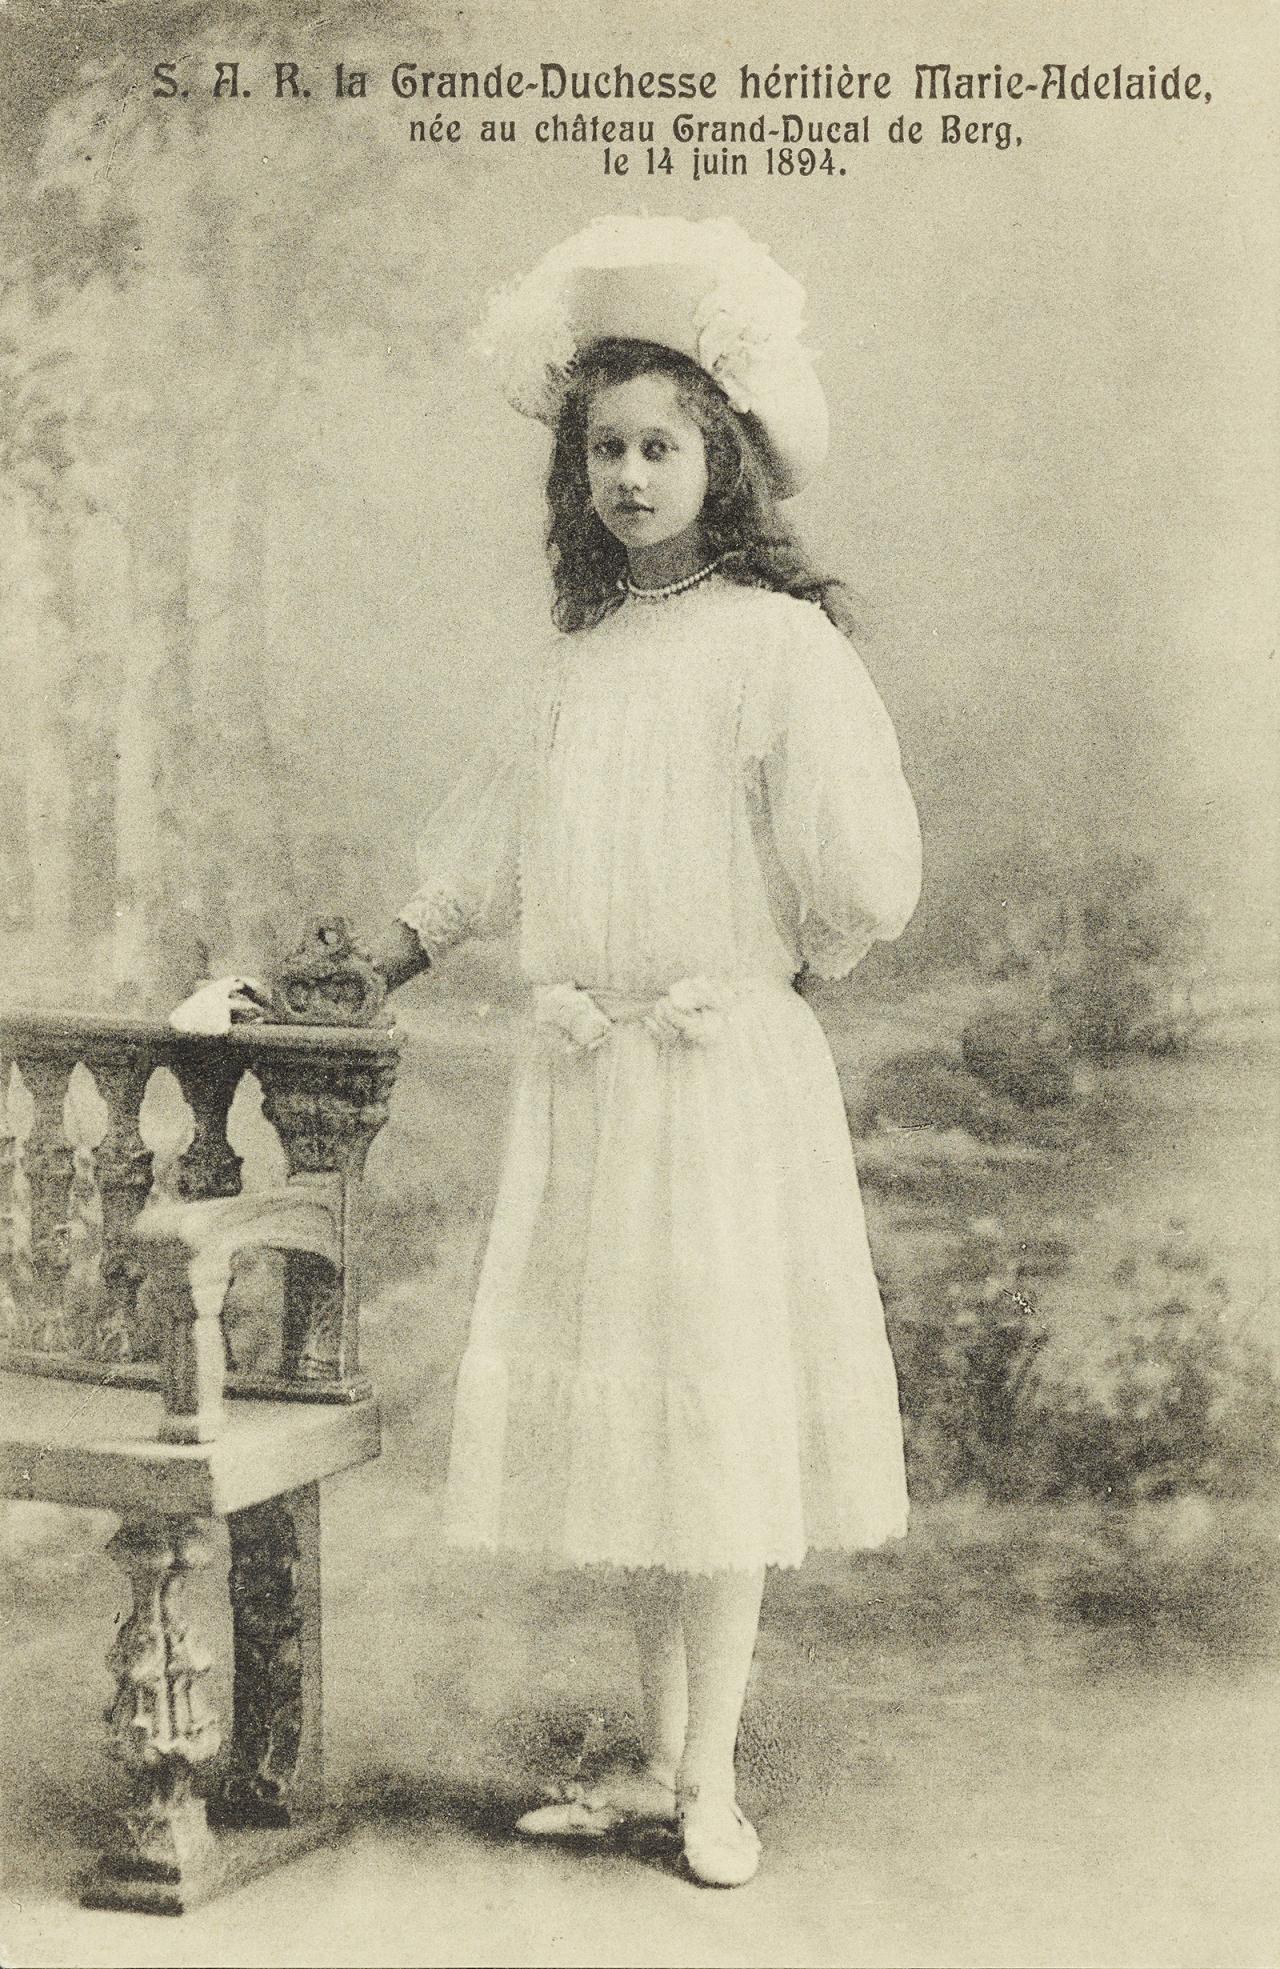 Carte postale de la jeune Grande-Duchesse héritière Marie-Adélaïde